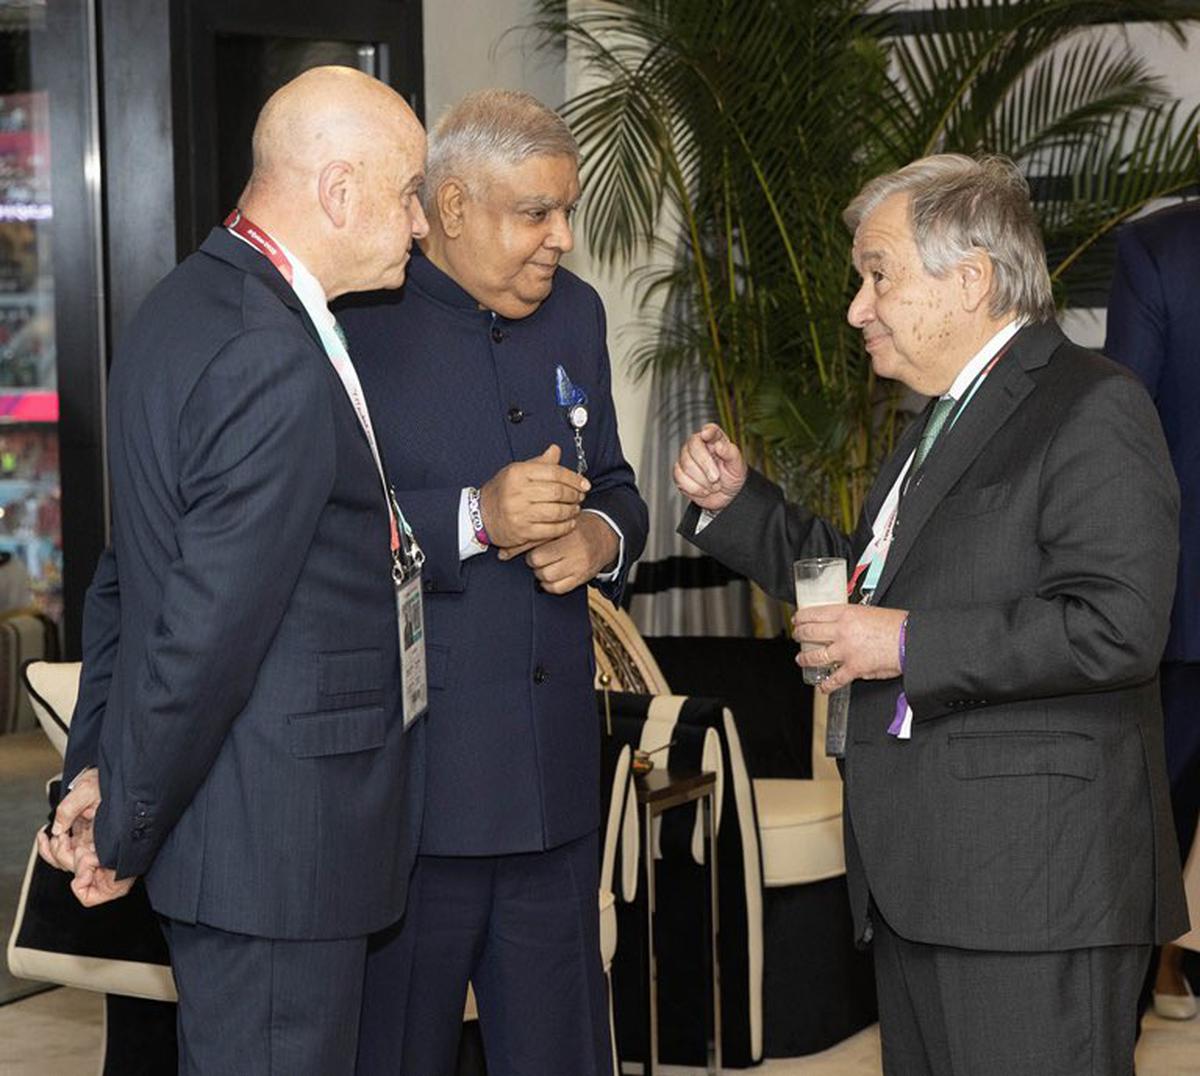 FIFA World Cup Qatar 2022 | Indian Vice President Dhankar meets FIFA, world leaders